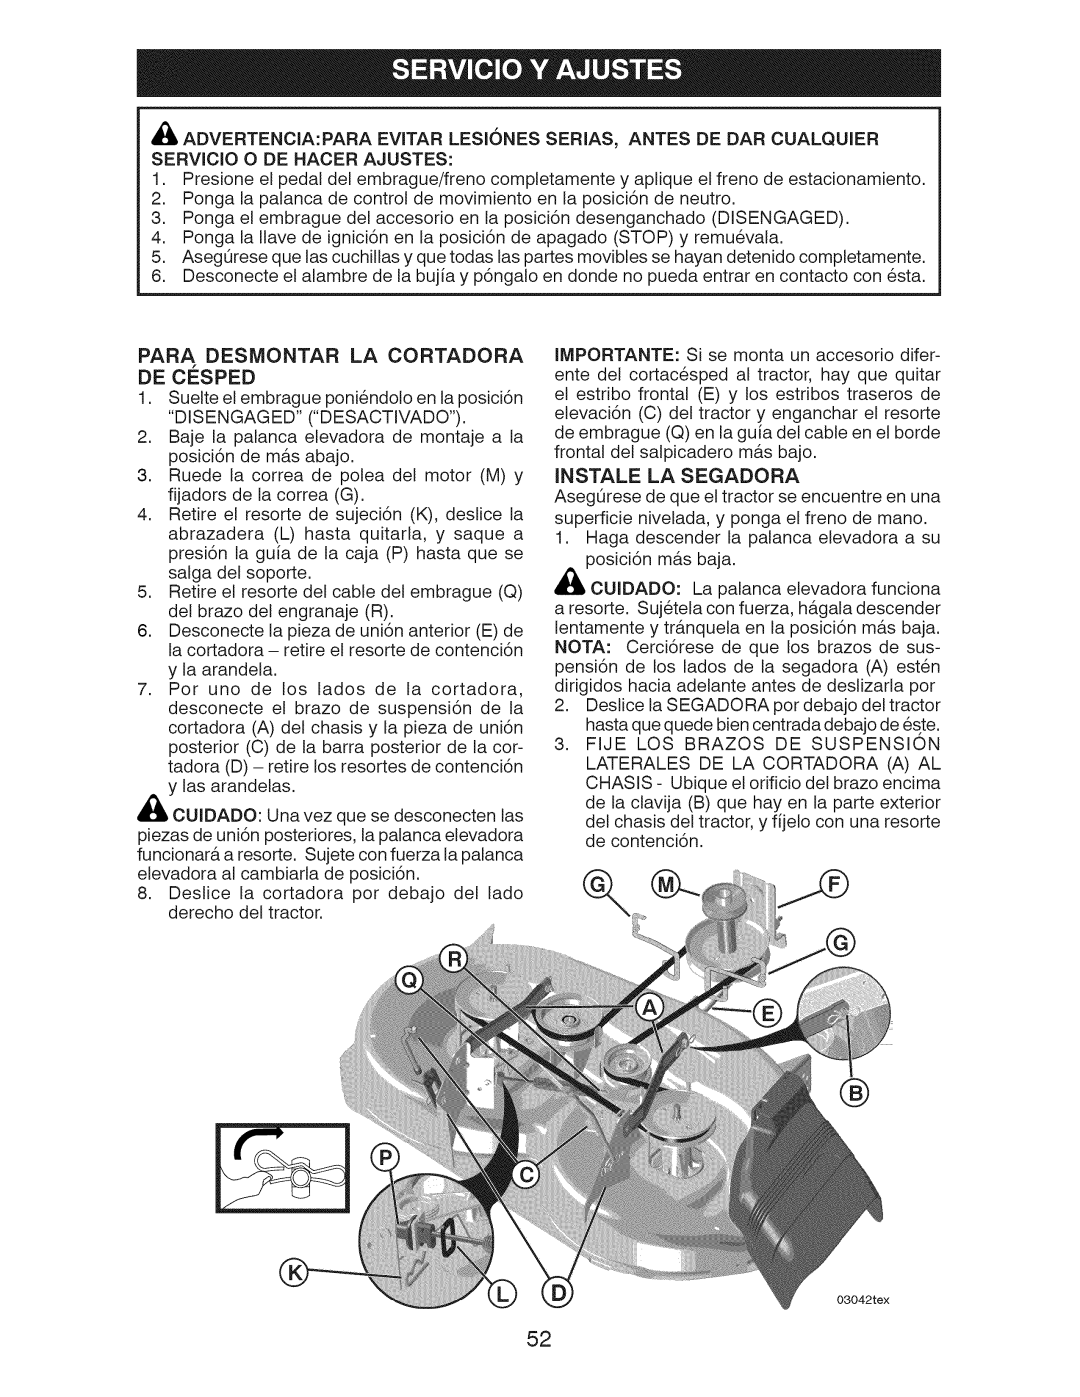 Craftsman 917.28922 owner manual De Cesped, Para Desmontar La Cortadora, Instale La Segadora 